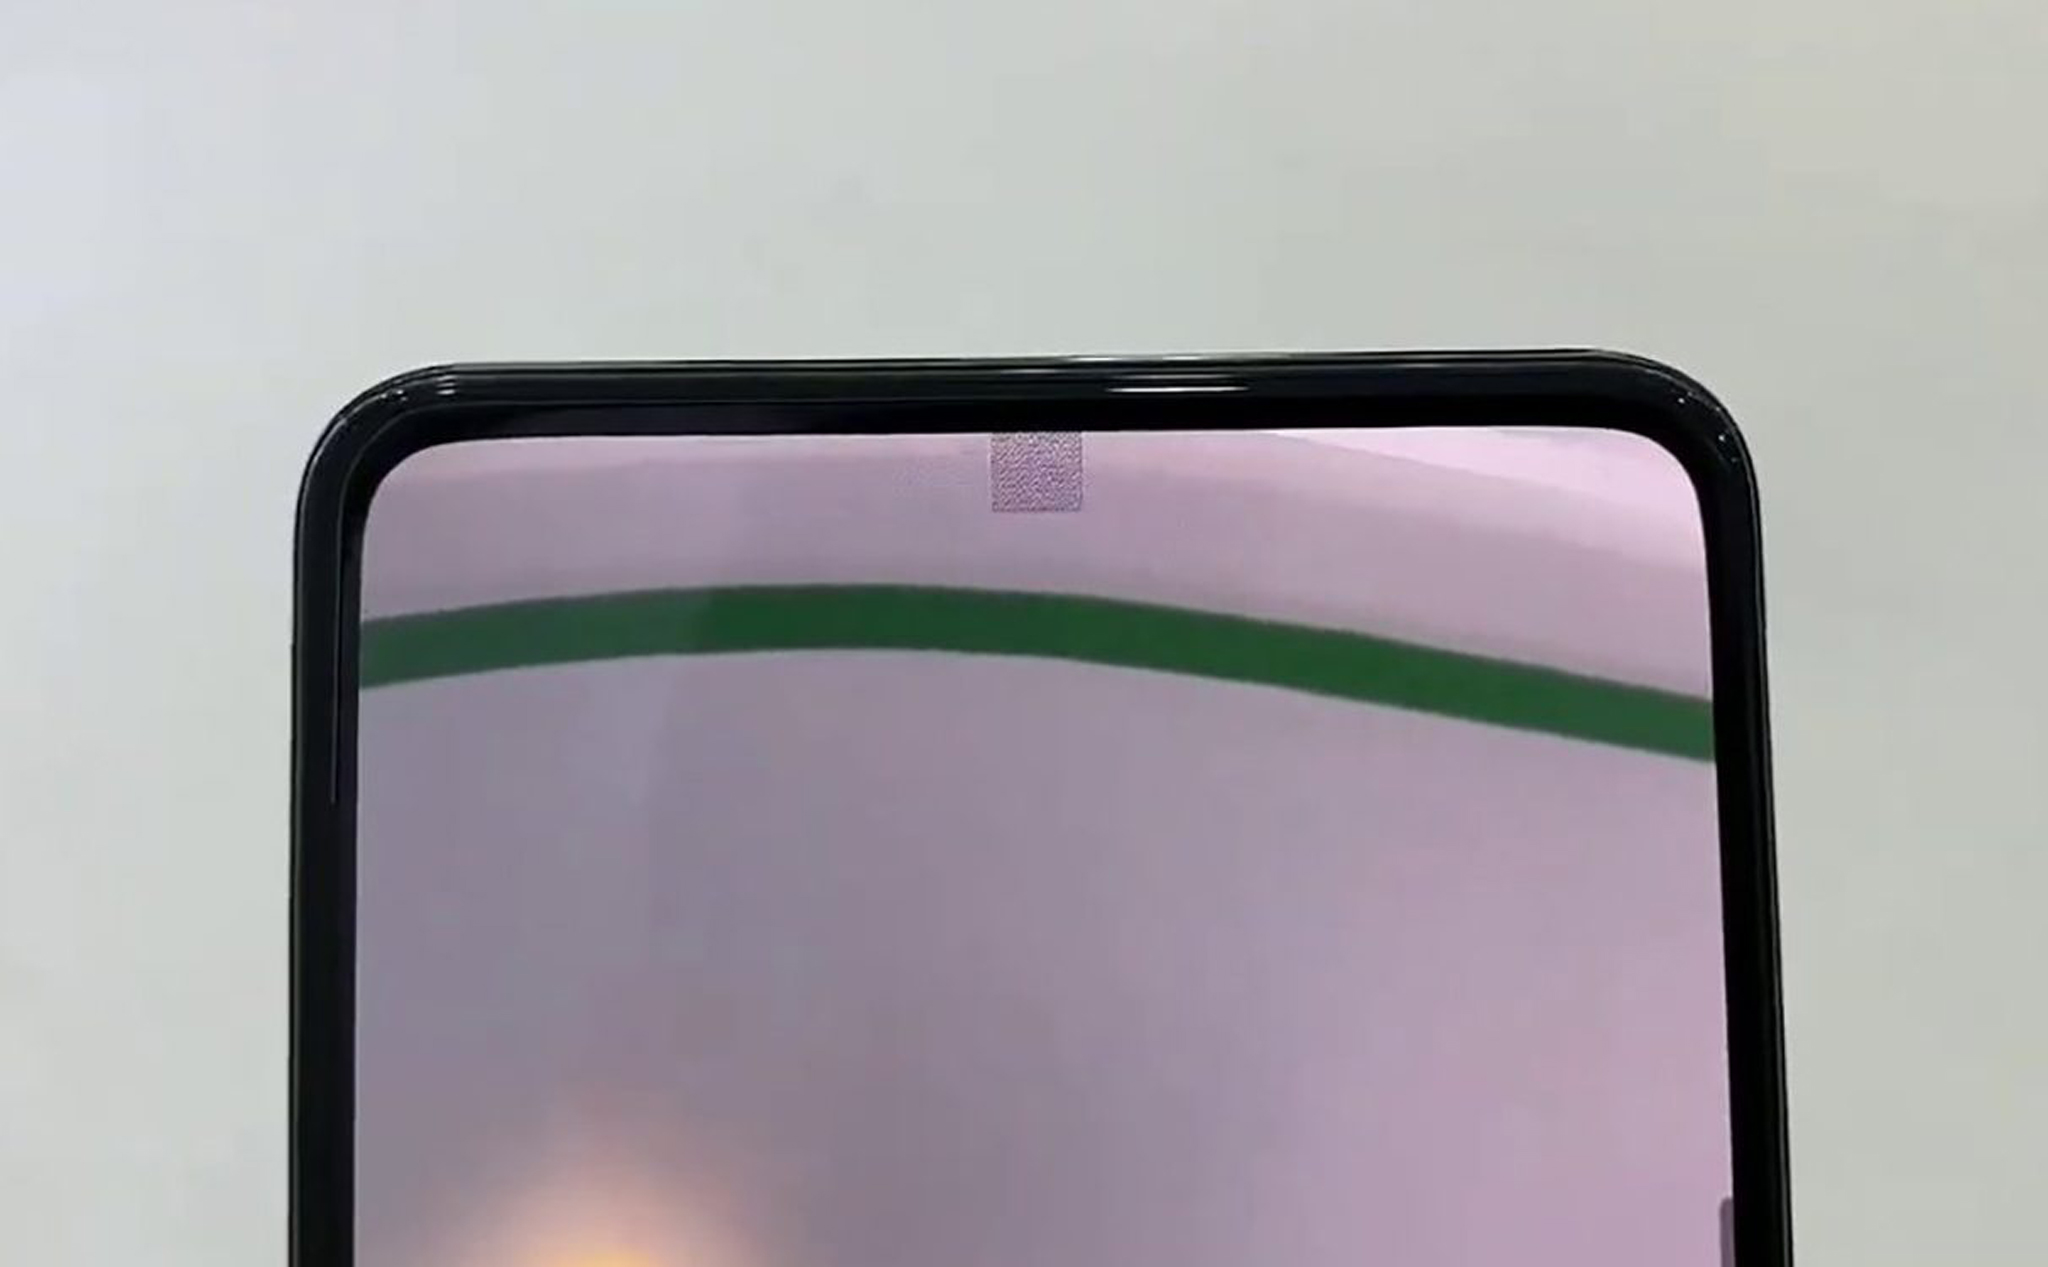 Phó chủ tịch Xiaomi nói công nghệ camera dưới màn hình vẫn chưa sẵn sàng